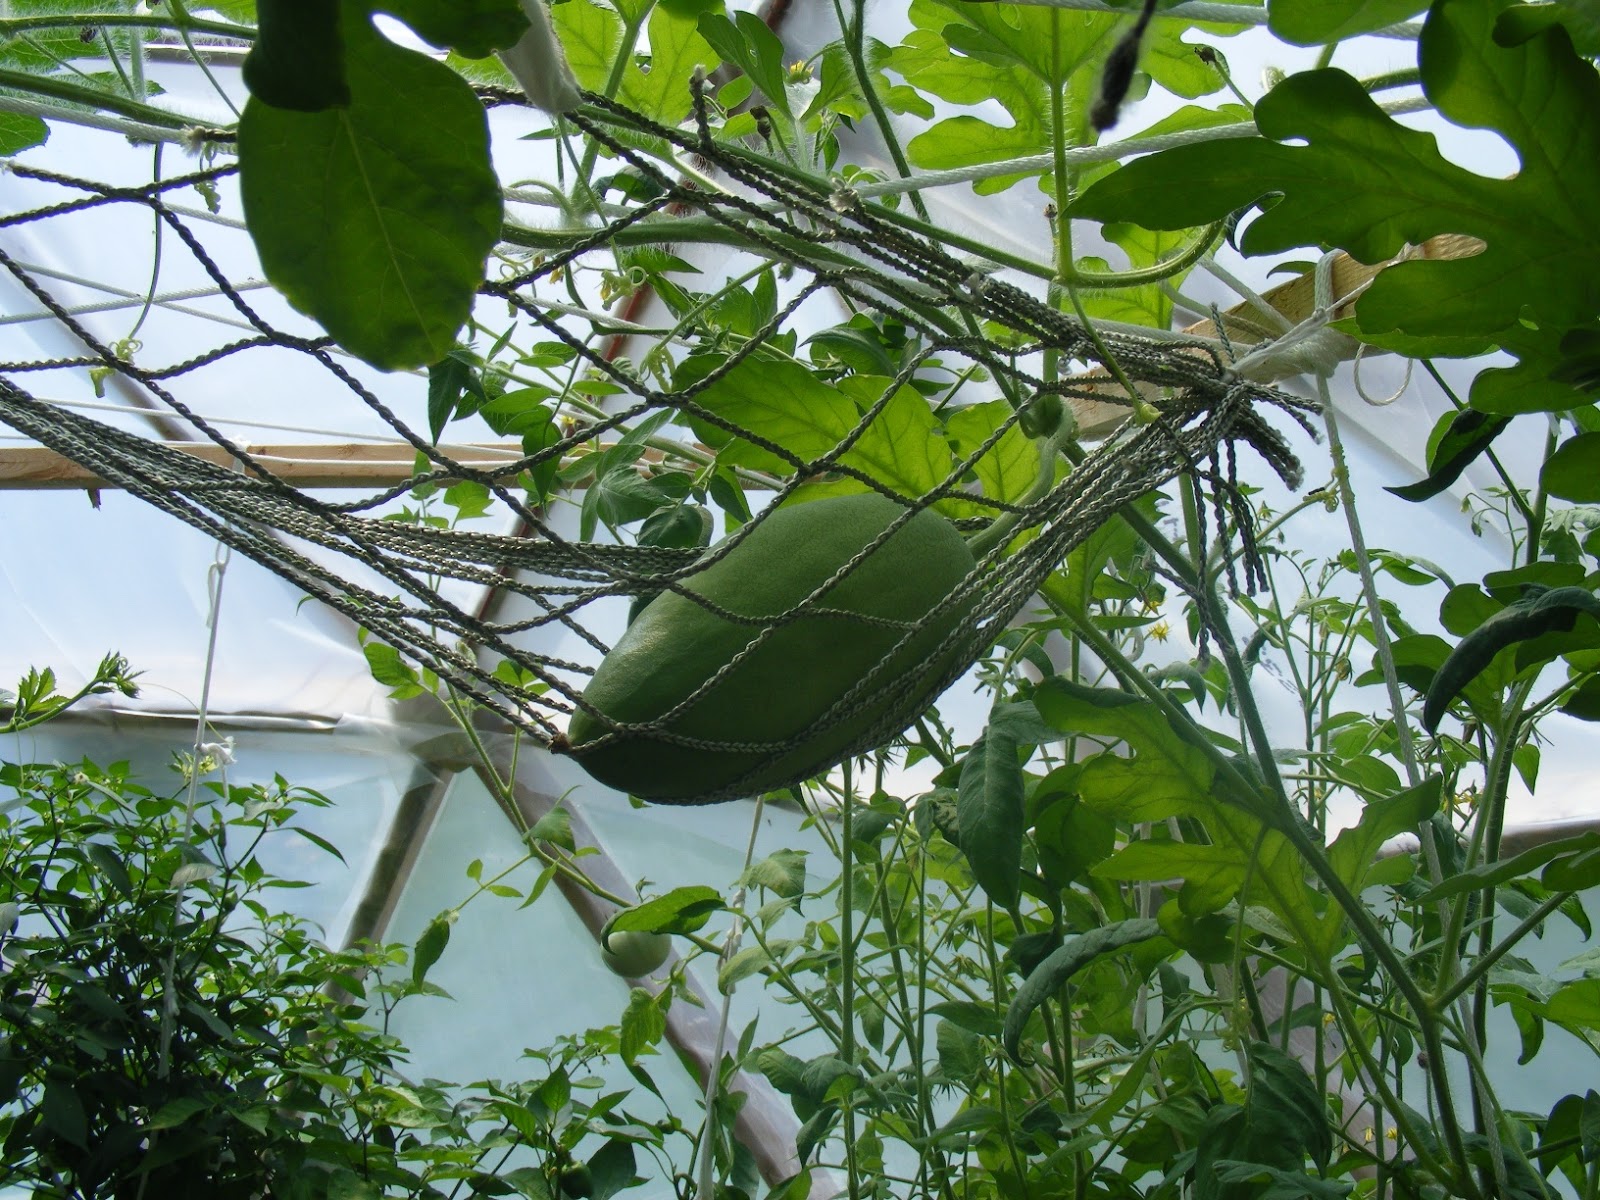 Выращивание арбузов в теплице, в том числе как правильно ухаживать зарастениями, а также особенности на Урале и в других регионах